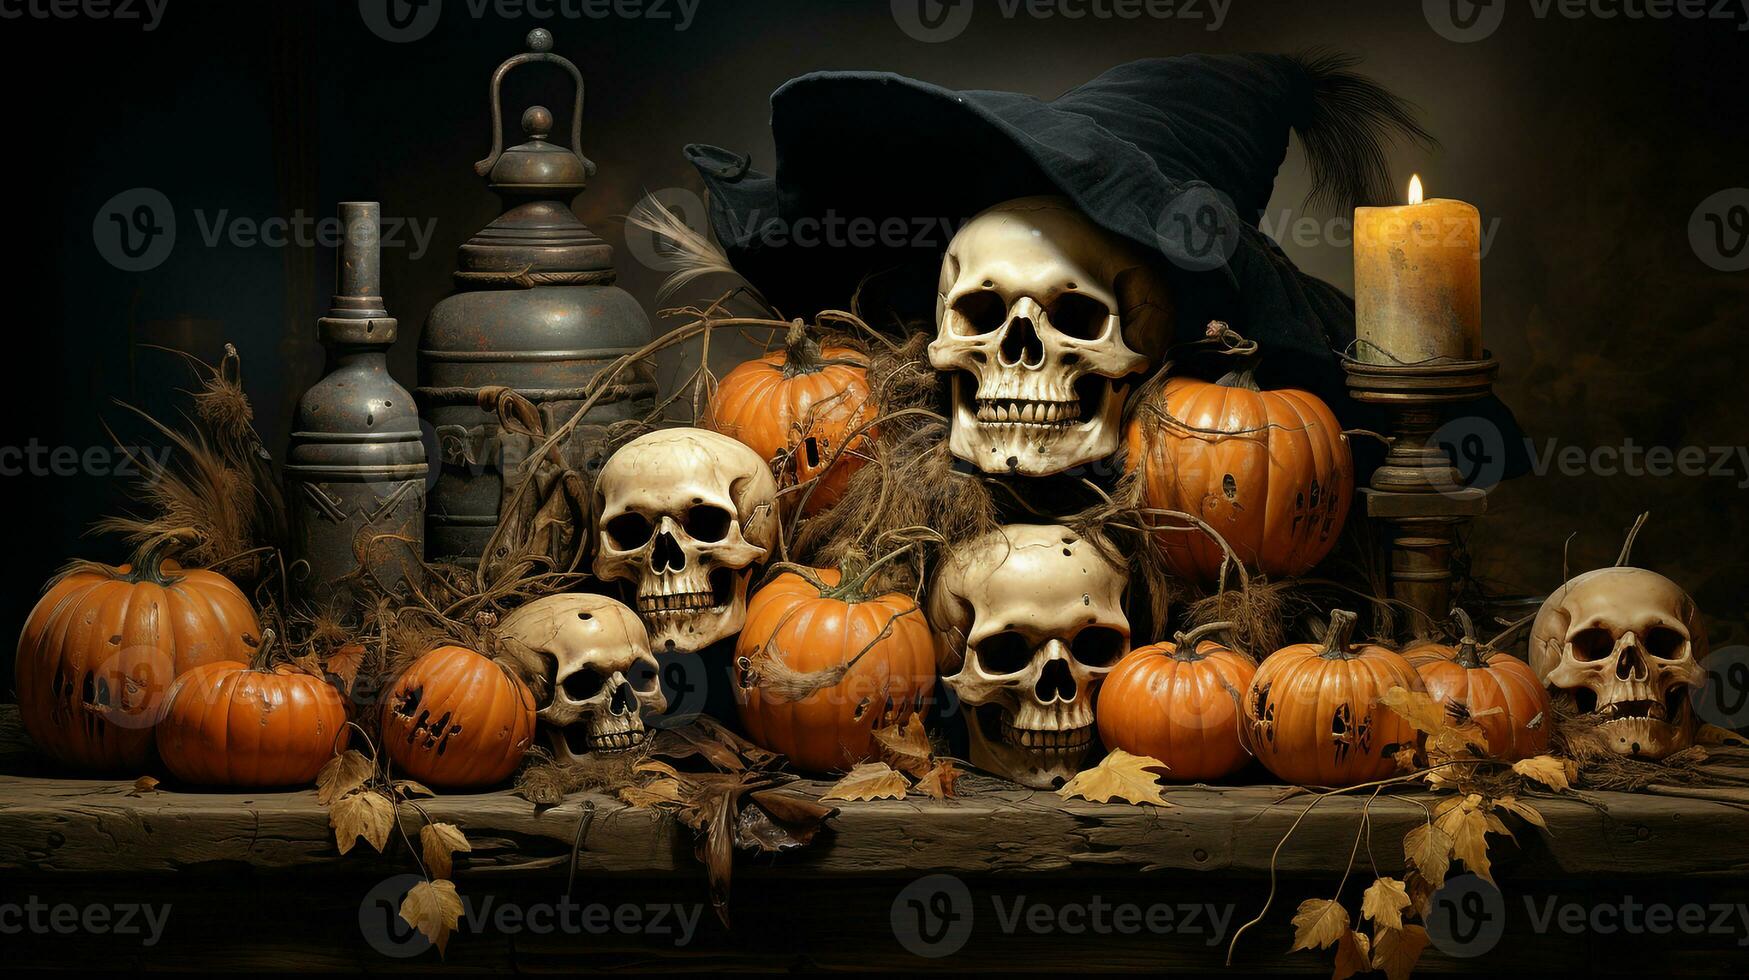 Halloween event in October photo